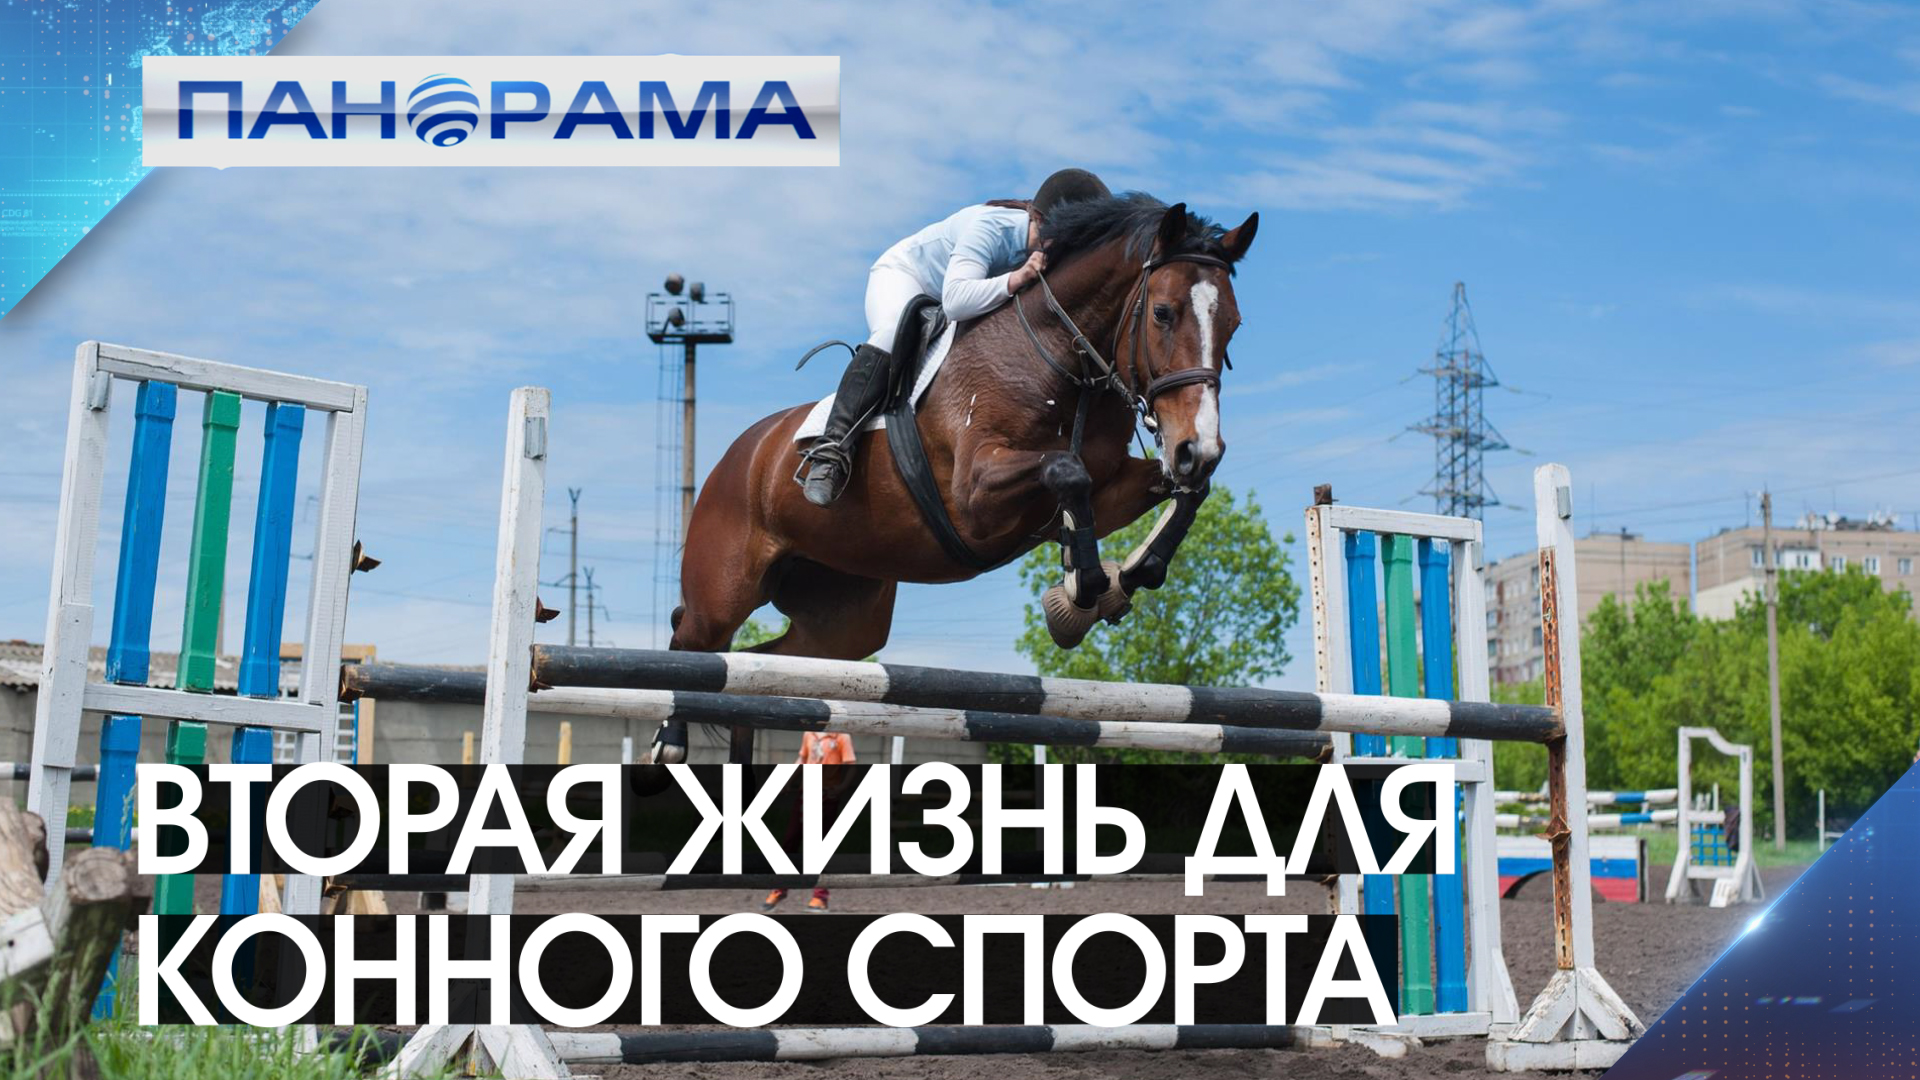 Расцвет конного спорта в Республике! Кто взялся за восстановление спортивной школы в Макеевке?